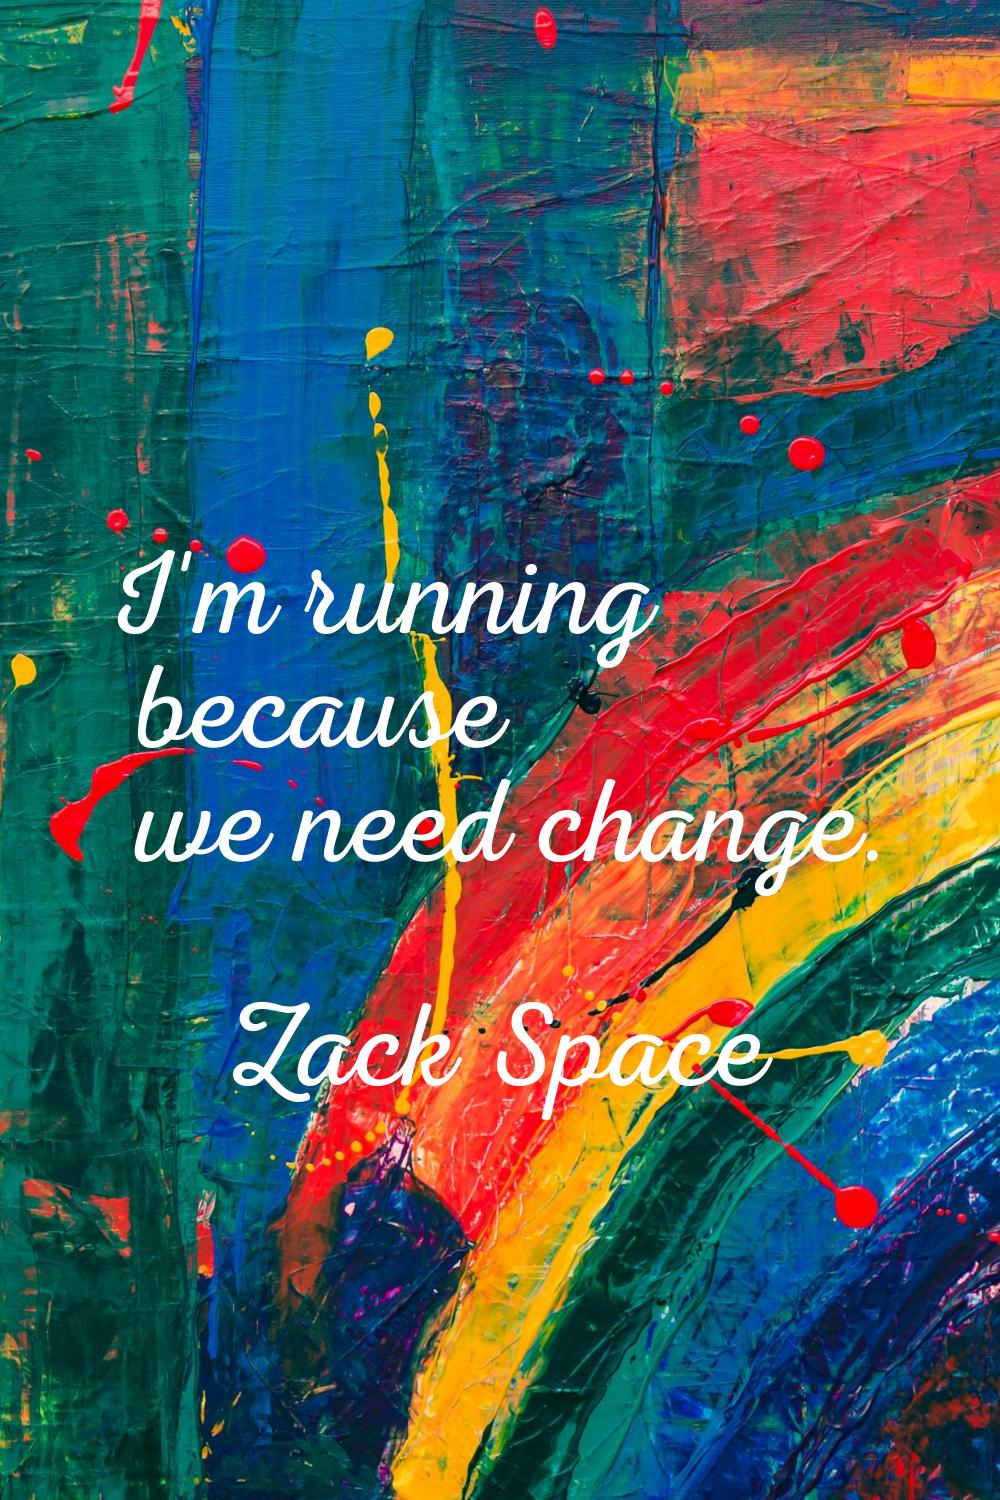 I'm running because we need change.